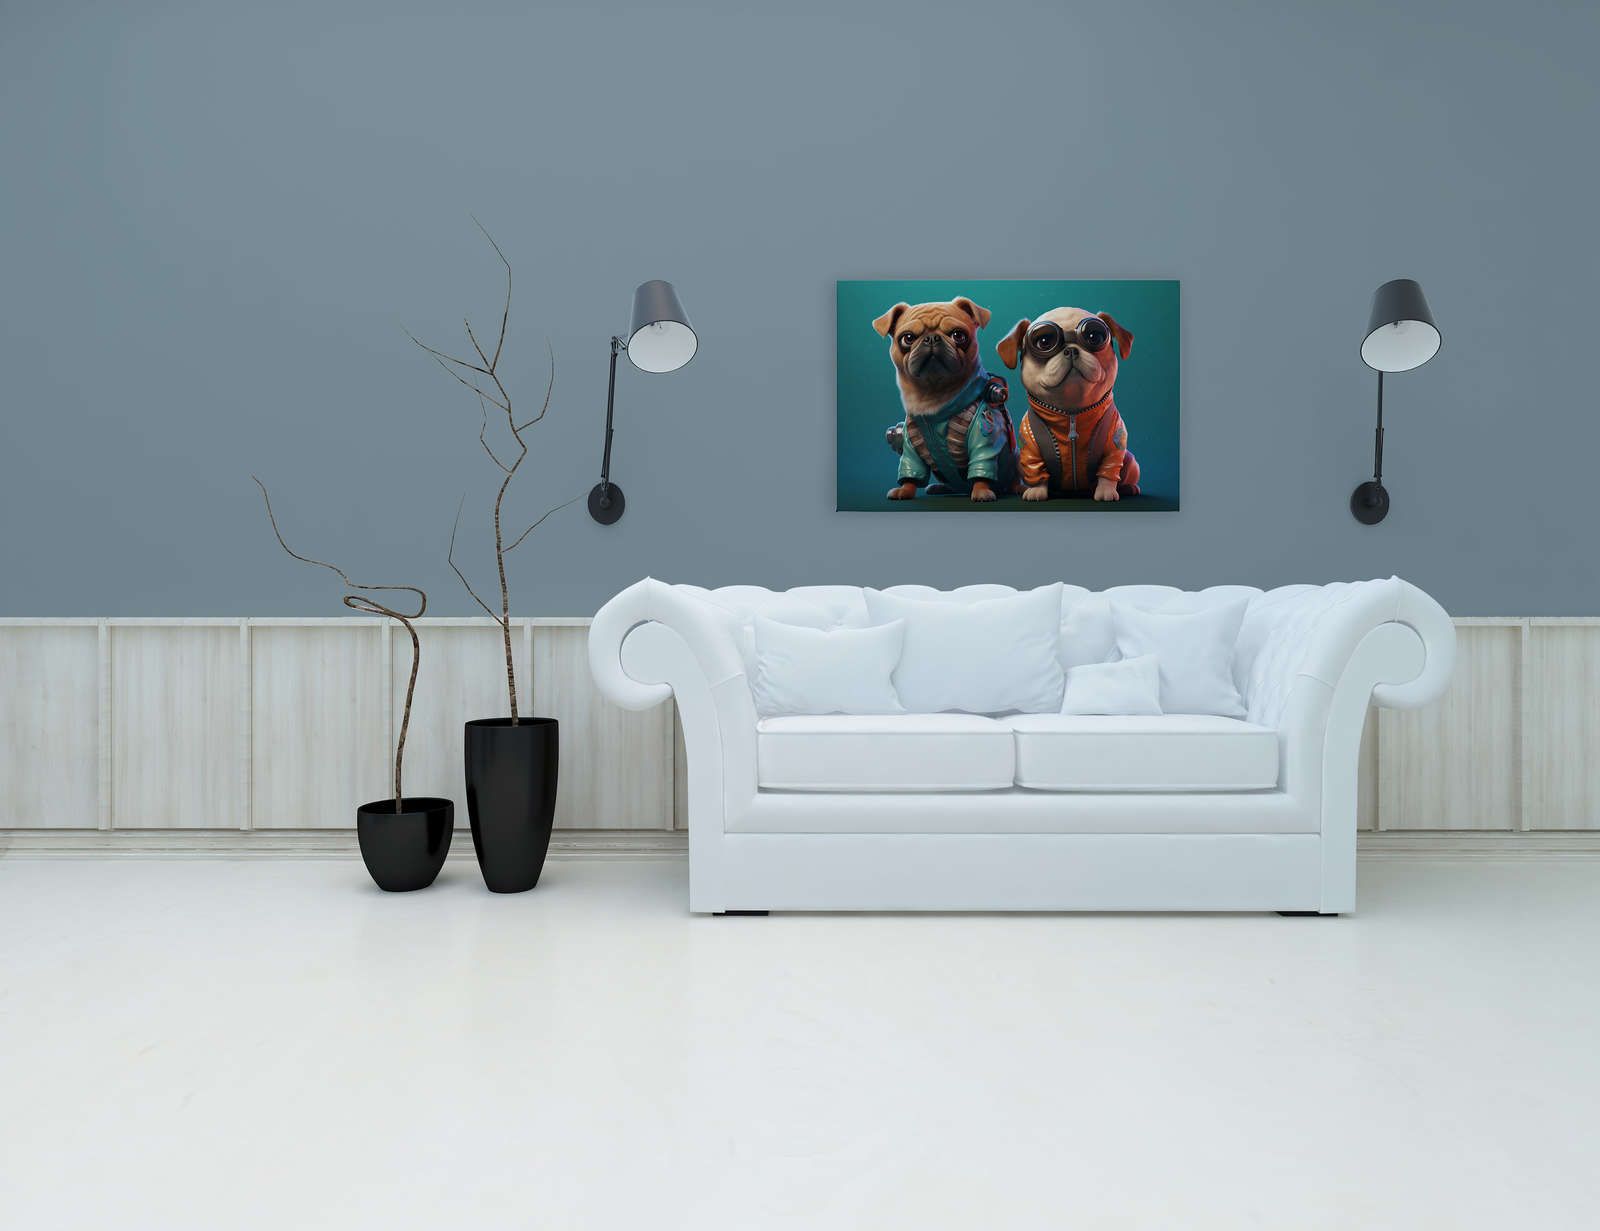             Toile KI »Cute Dogs« - 90 cm x 60 cm
        